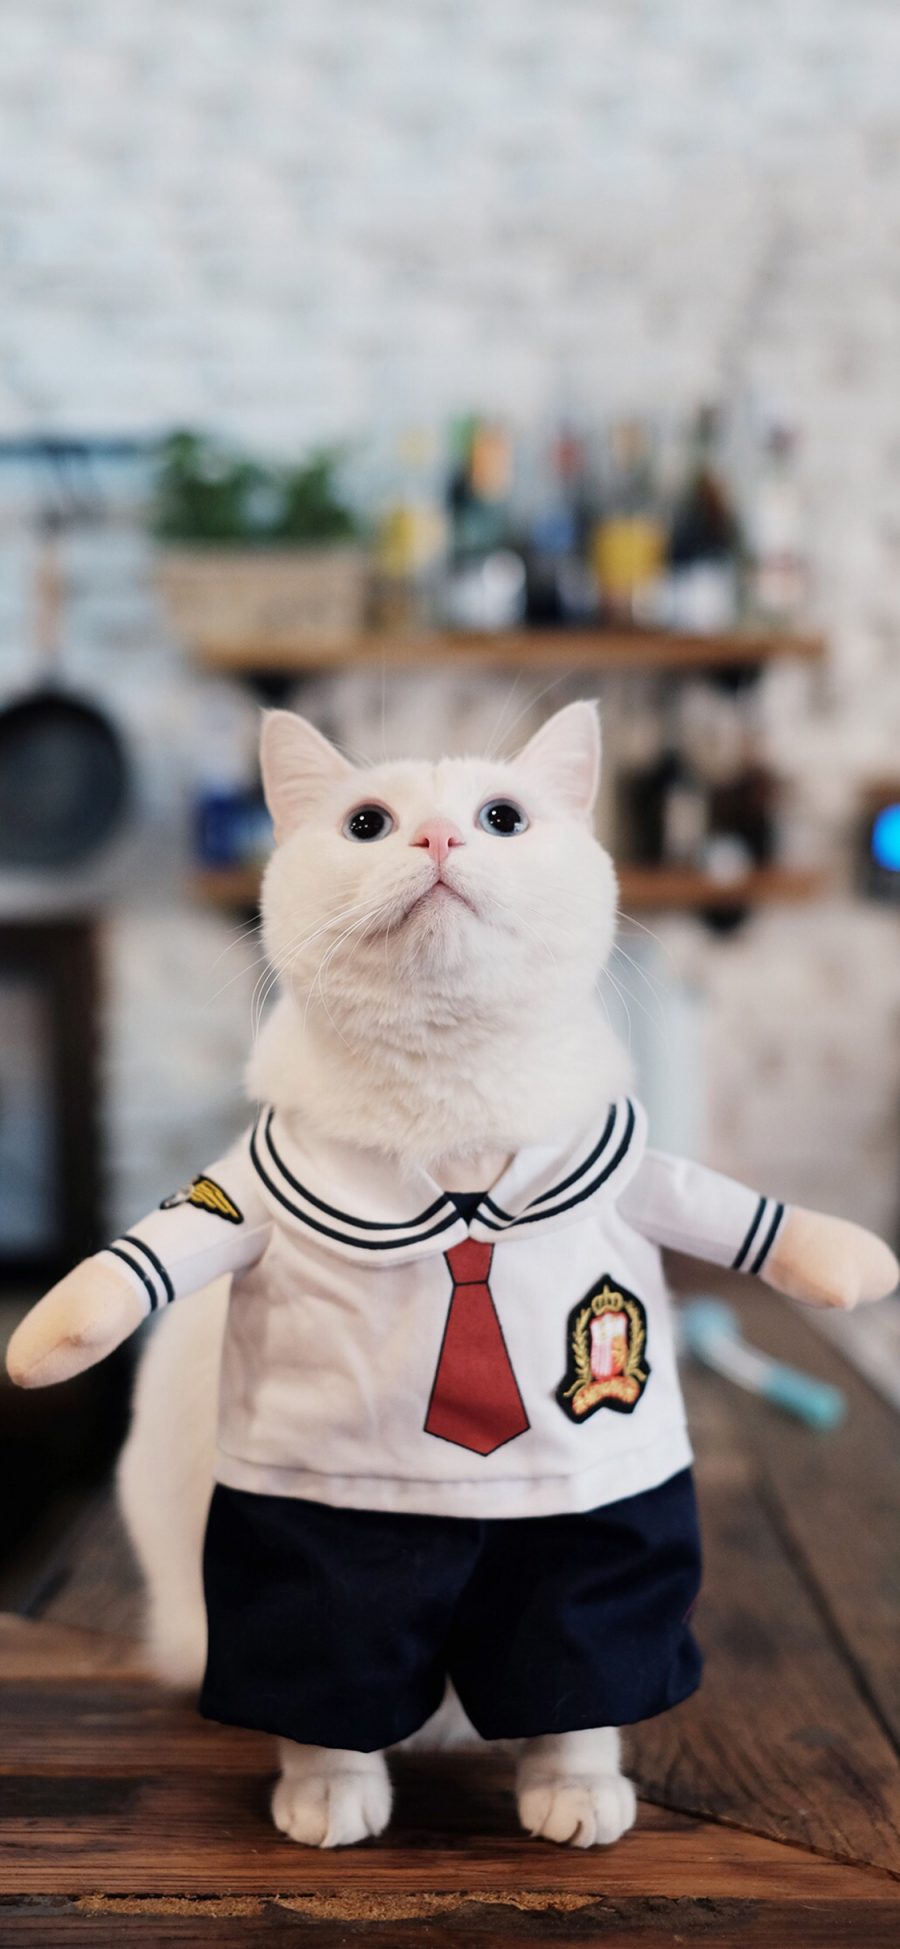 [2436×1125]宠物猫 喵星人 猫咪 衣服 可爱 苹果手机壁纸图片